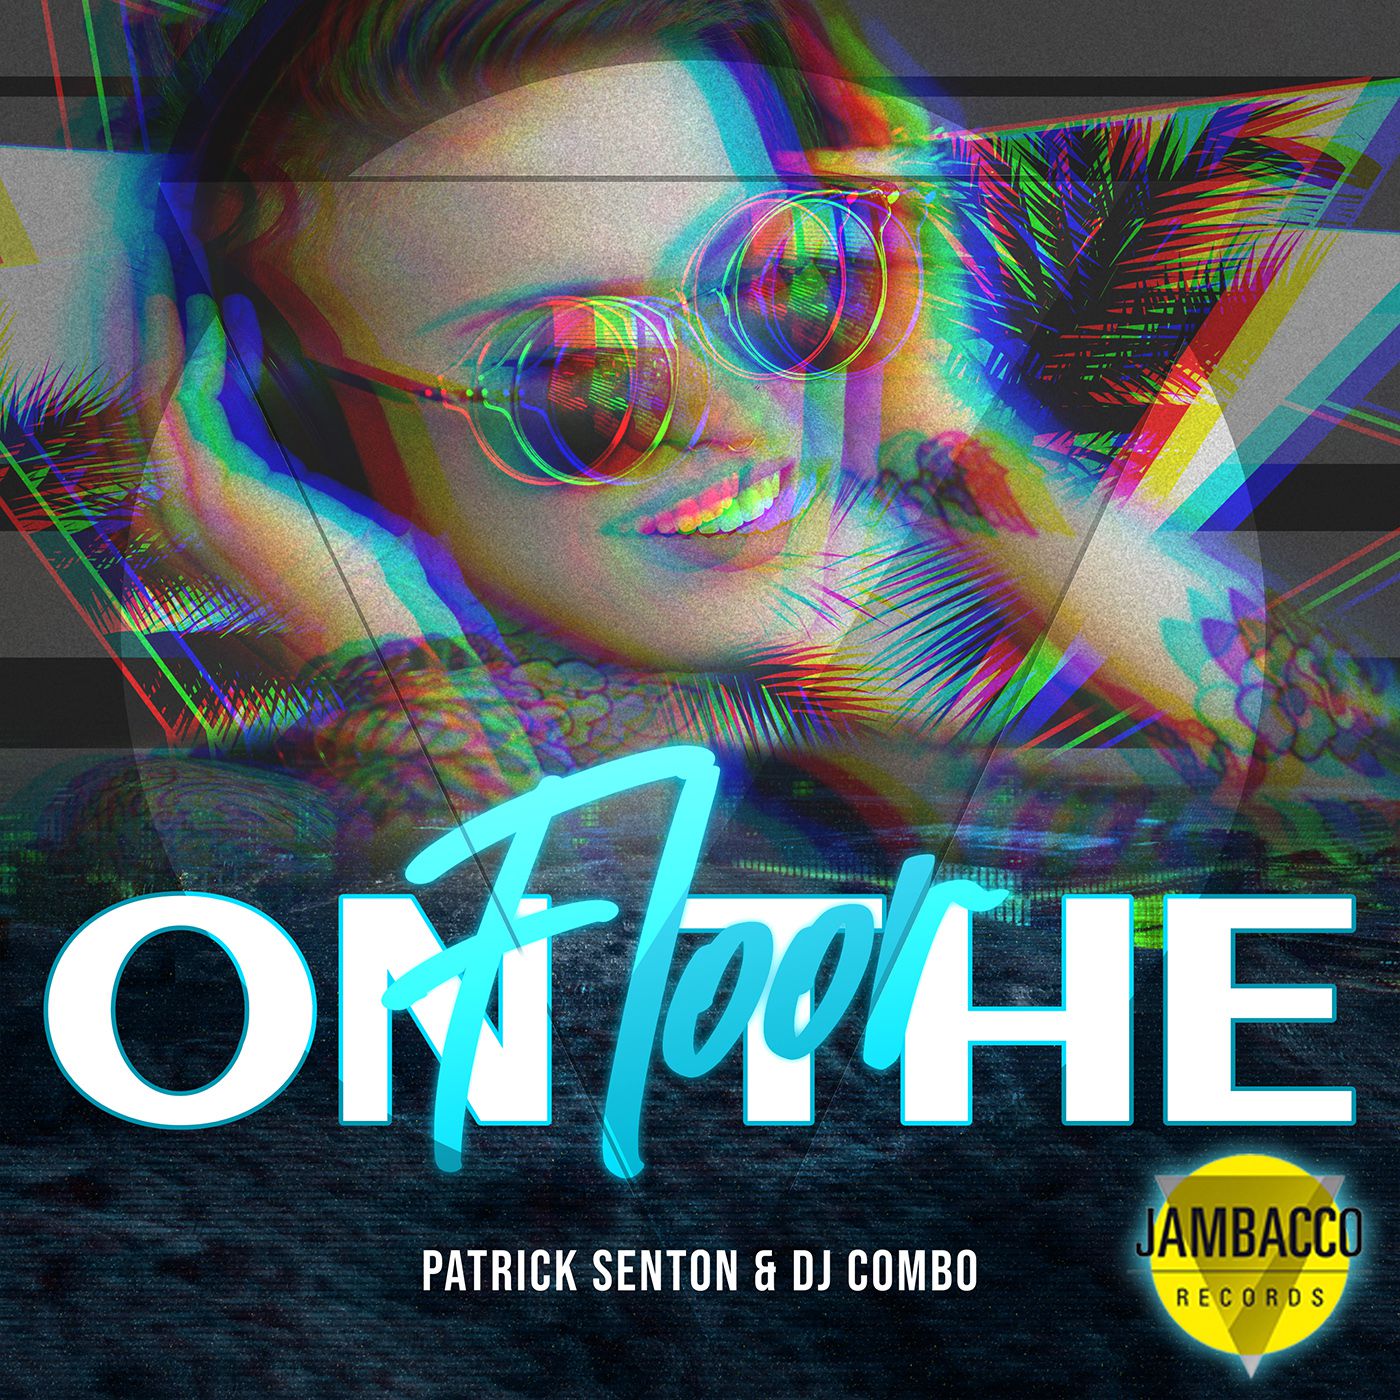 Patrick Senton & DJ Combo präsentieren neue Single